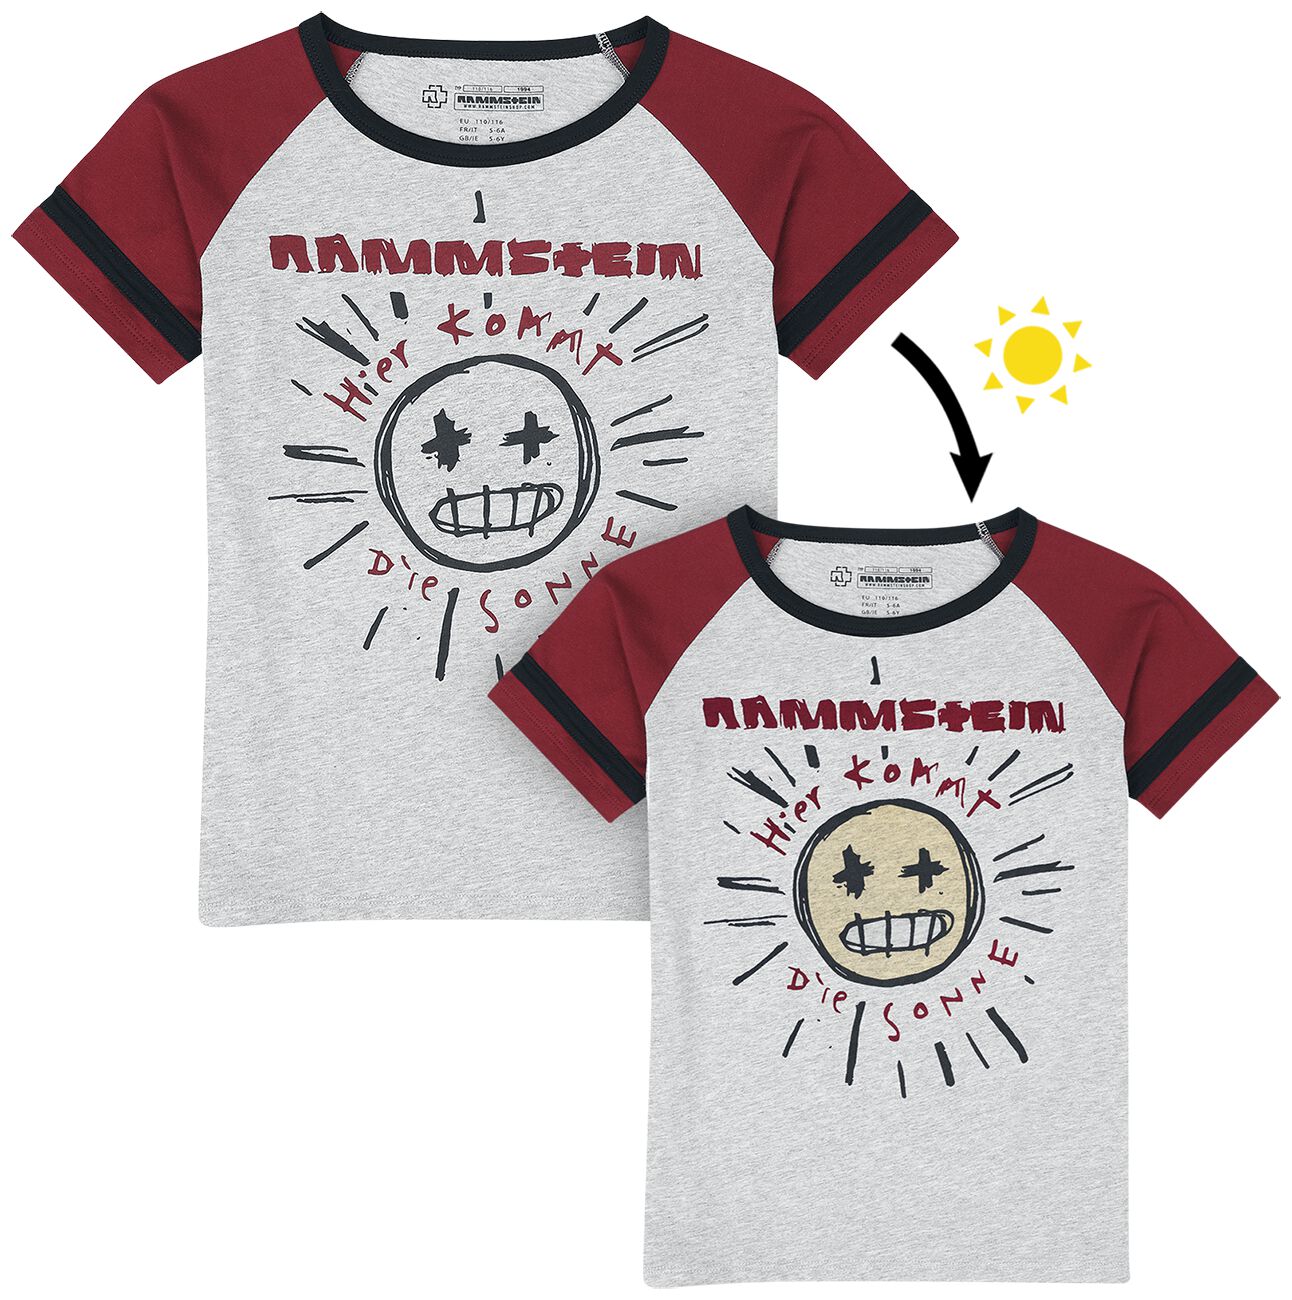 T-shirt de Rammstein - Kids - Sonne - 110/116 à 158/164 - pour filles & garçonse - gris/rouge